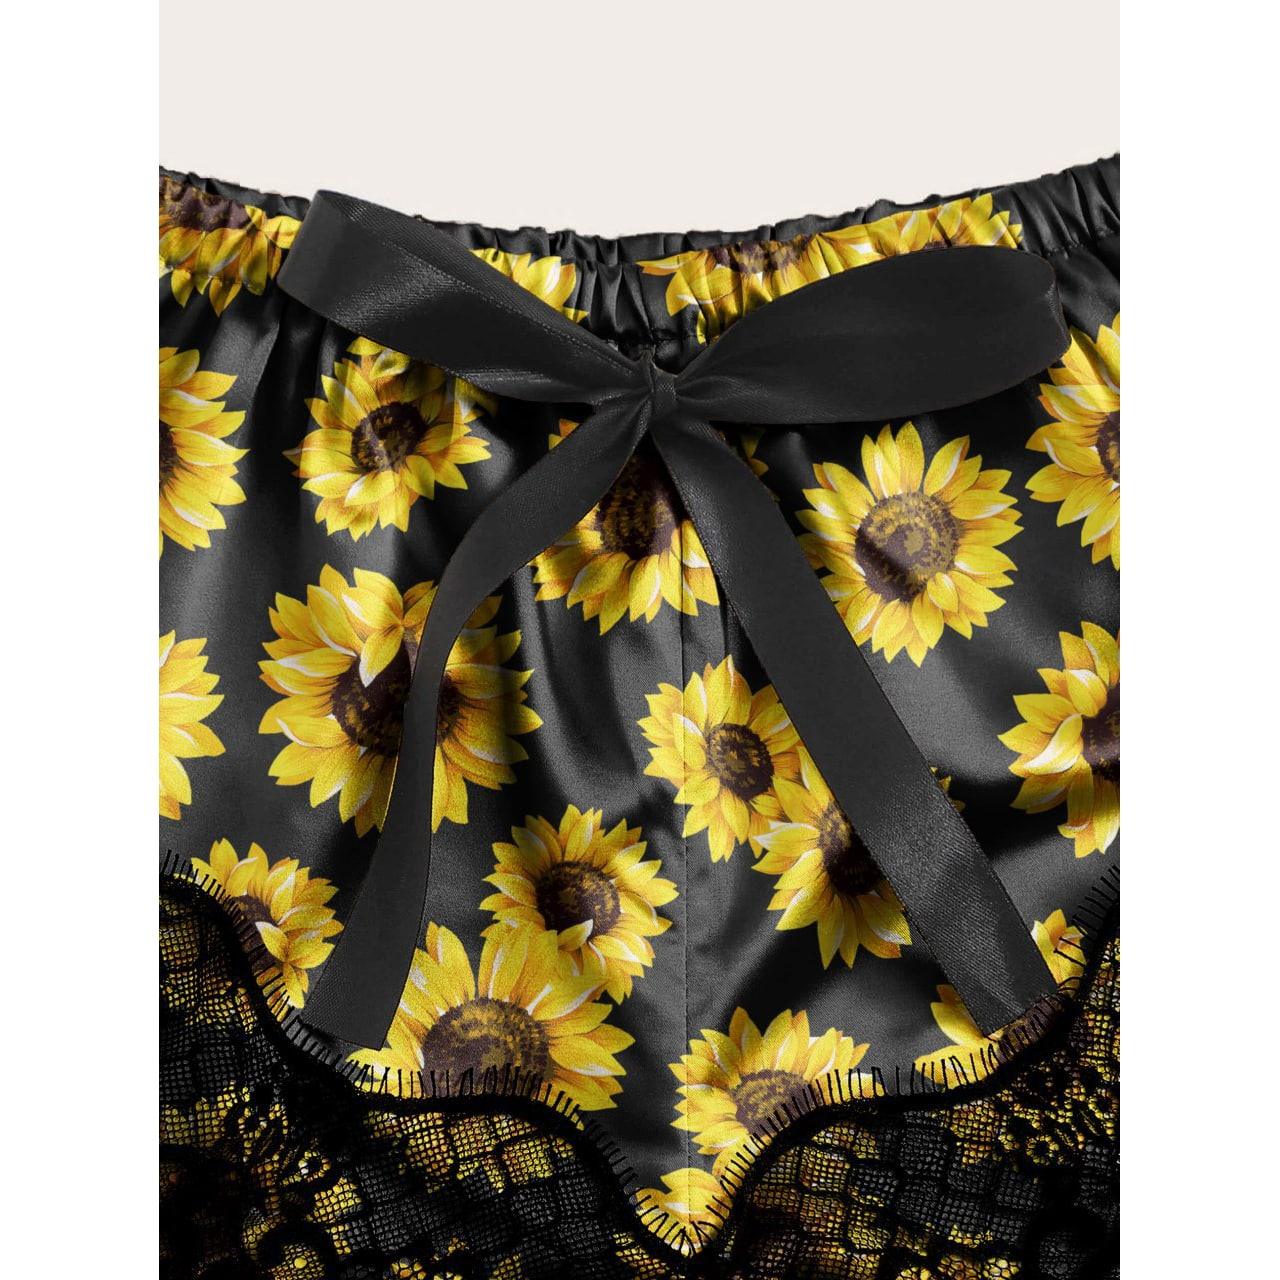 Sunflower Lace Crop Top & Short, Sexy 2 Piece Sleepwear For Women - Wonder Skull